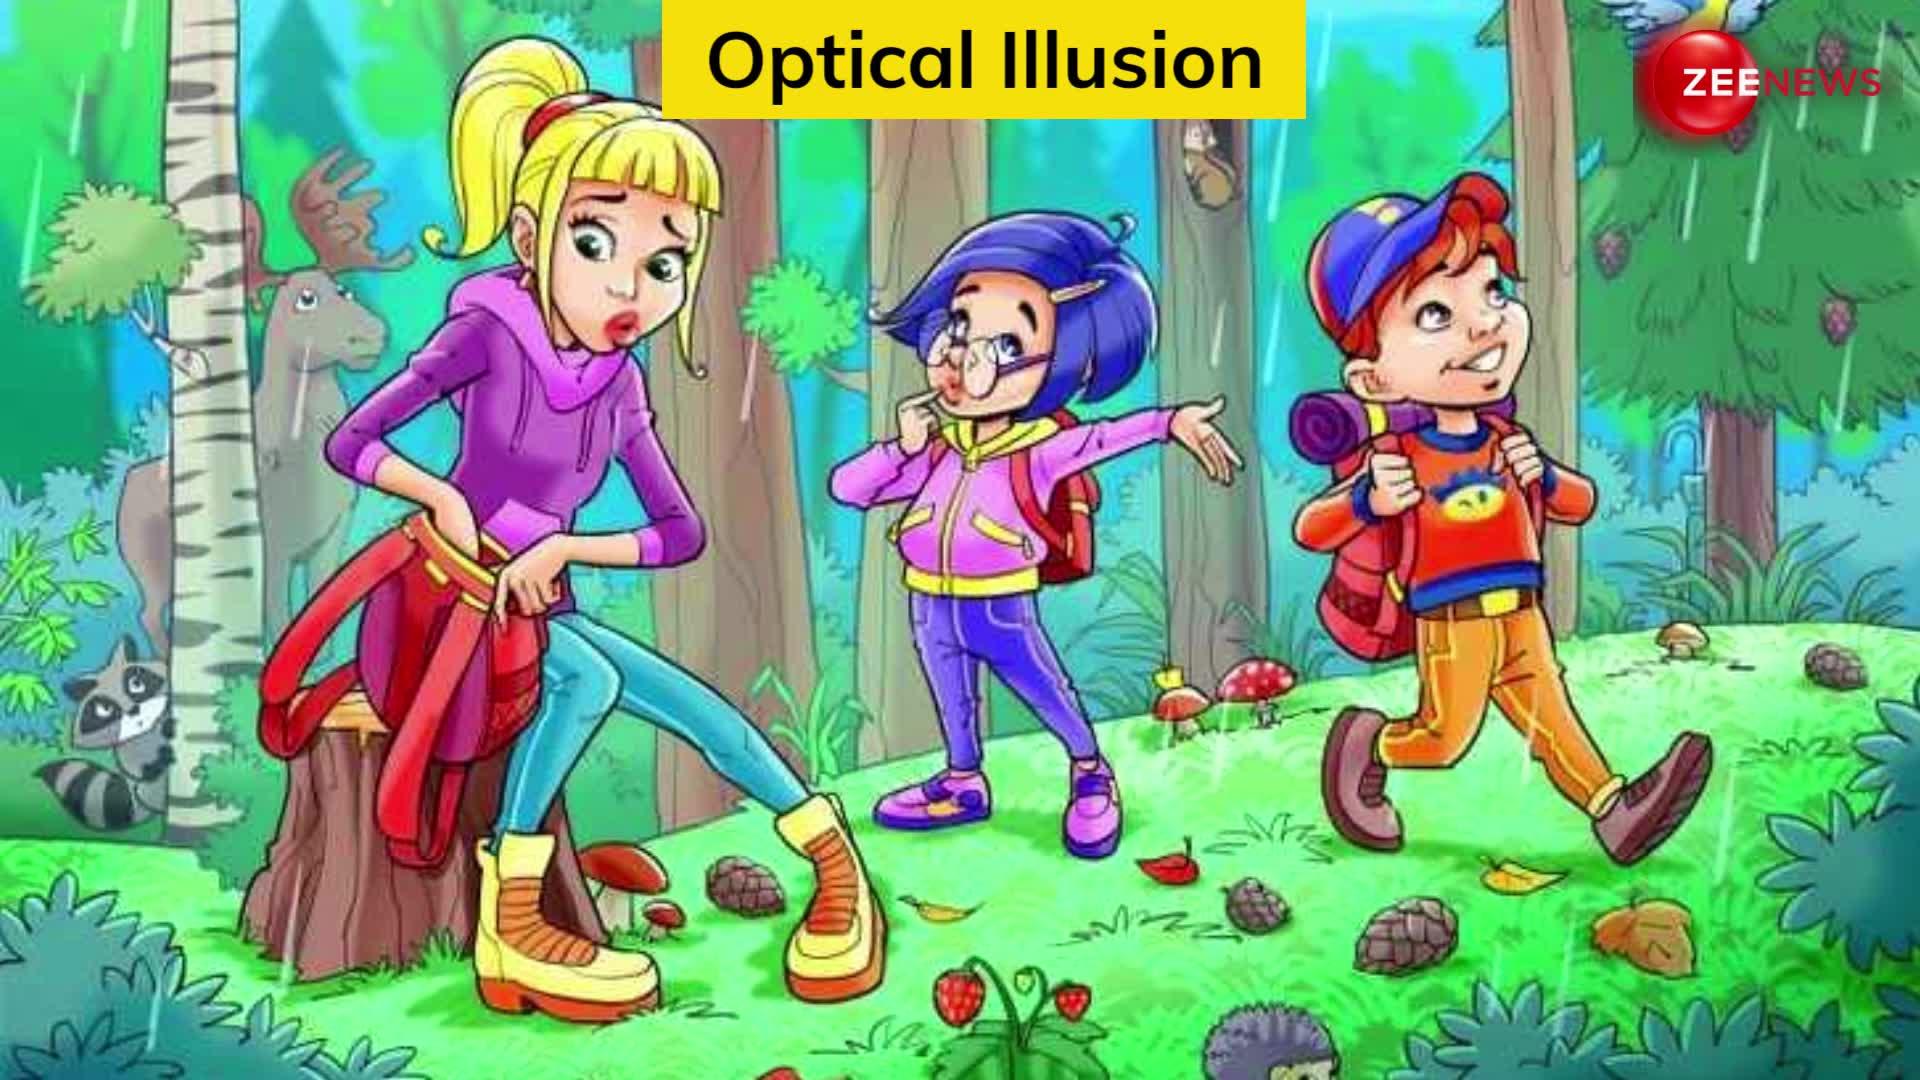 Optical Illusion: ज्यादा तेज नजर है, तो जल्दी से फोटो में ढूंढ कर दिखाओ छिपा हुआ छाता